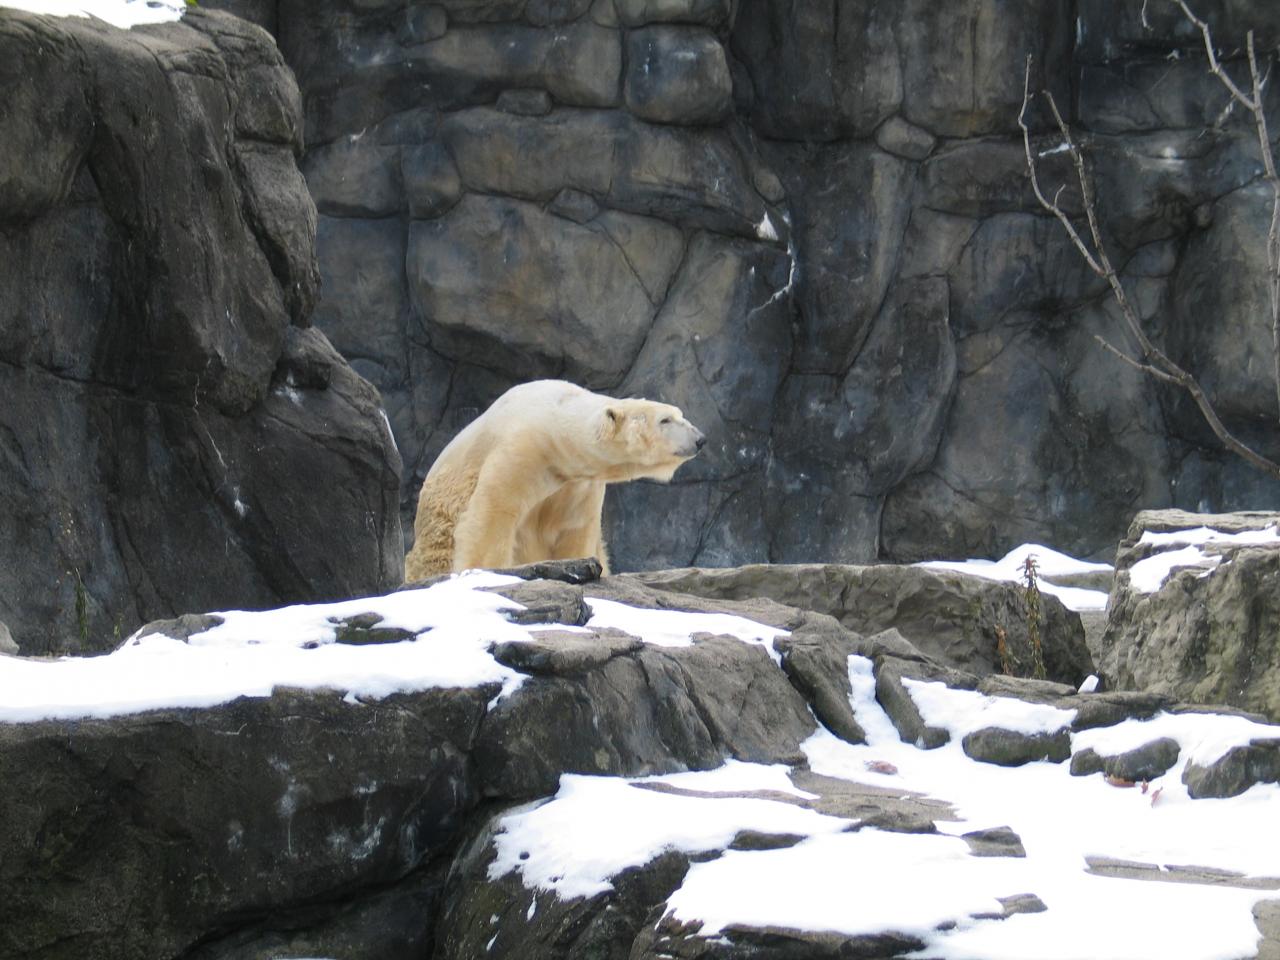 a polar bear in an exhibit